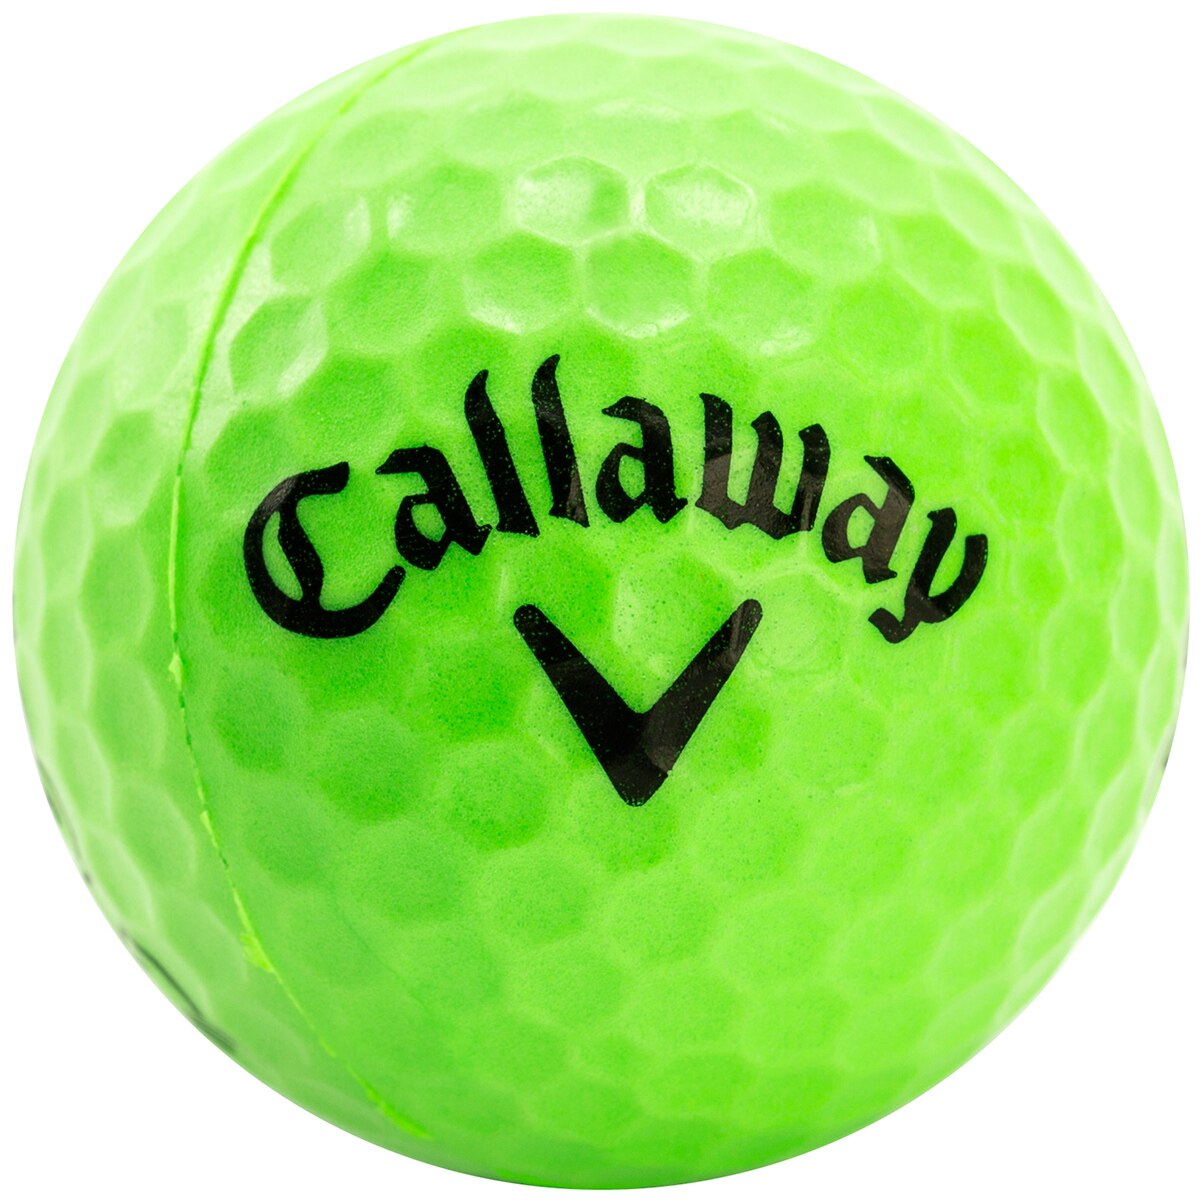 ヘックス プラクティスボール 18個入り(その他練習器具)|Callaway Golf ...